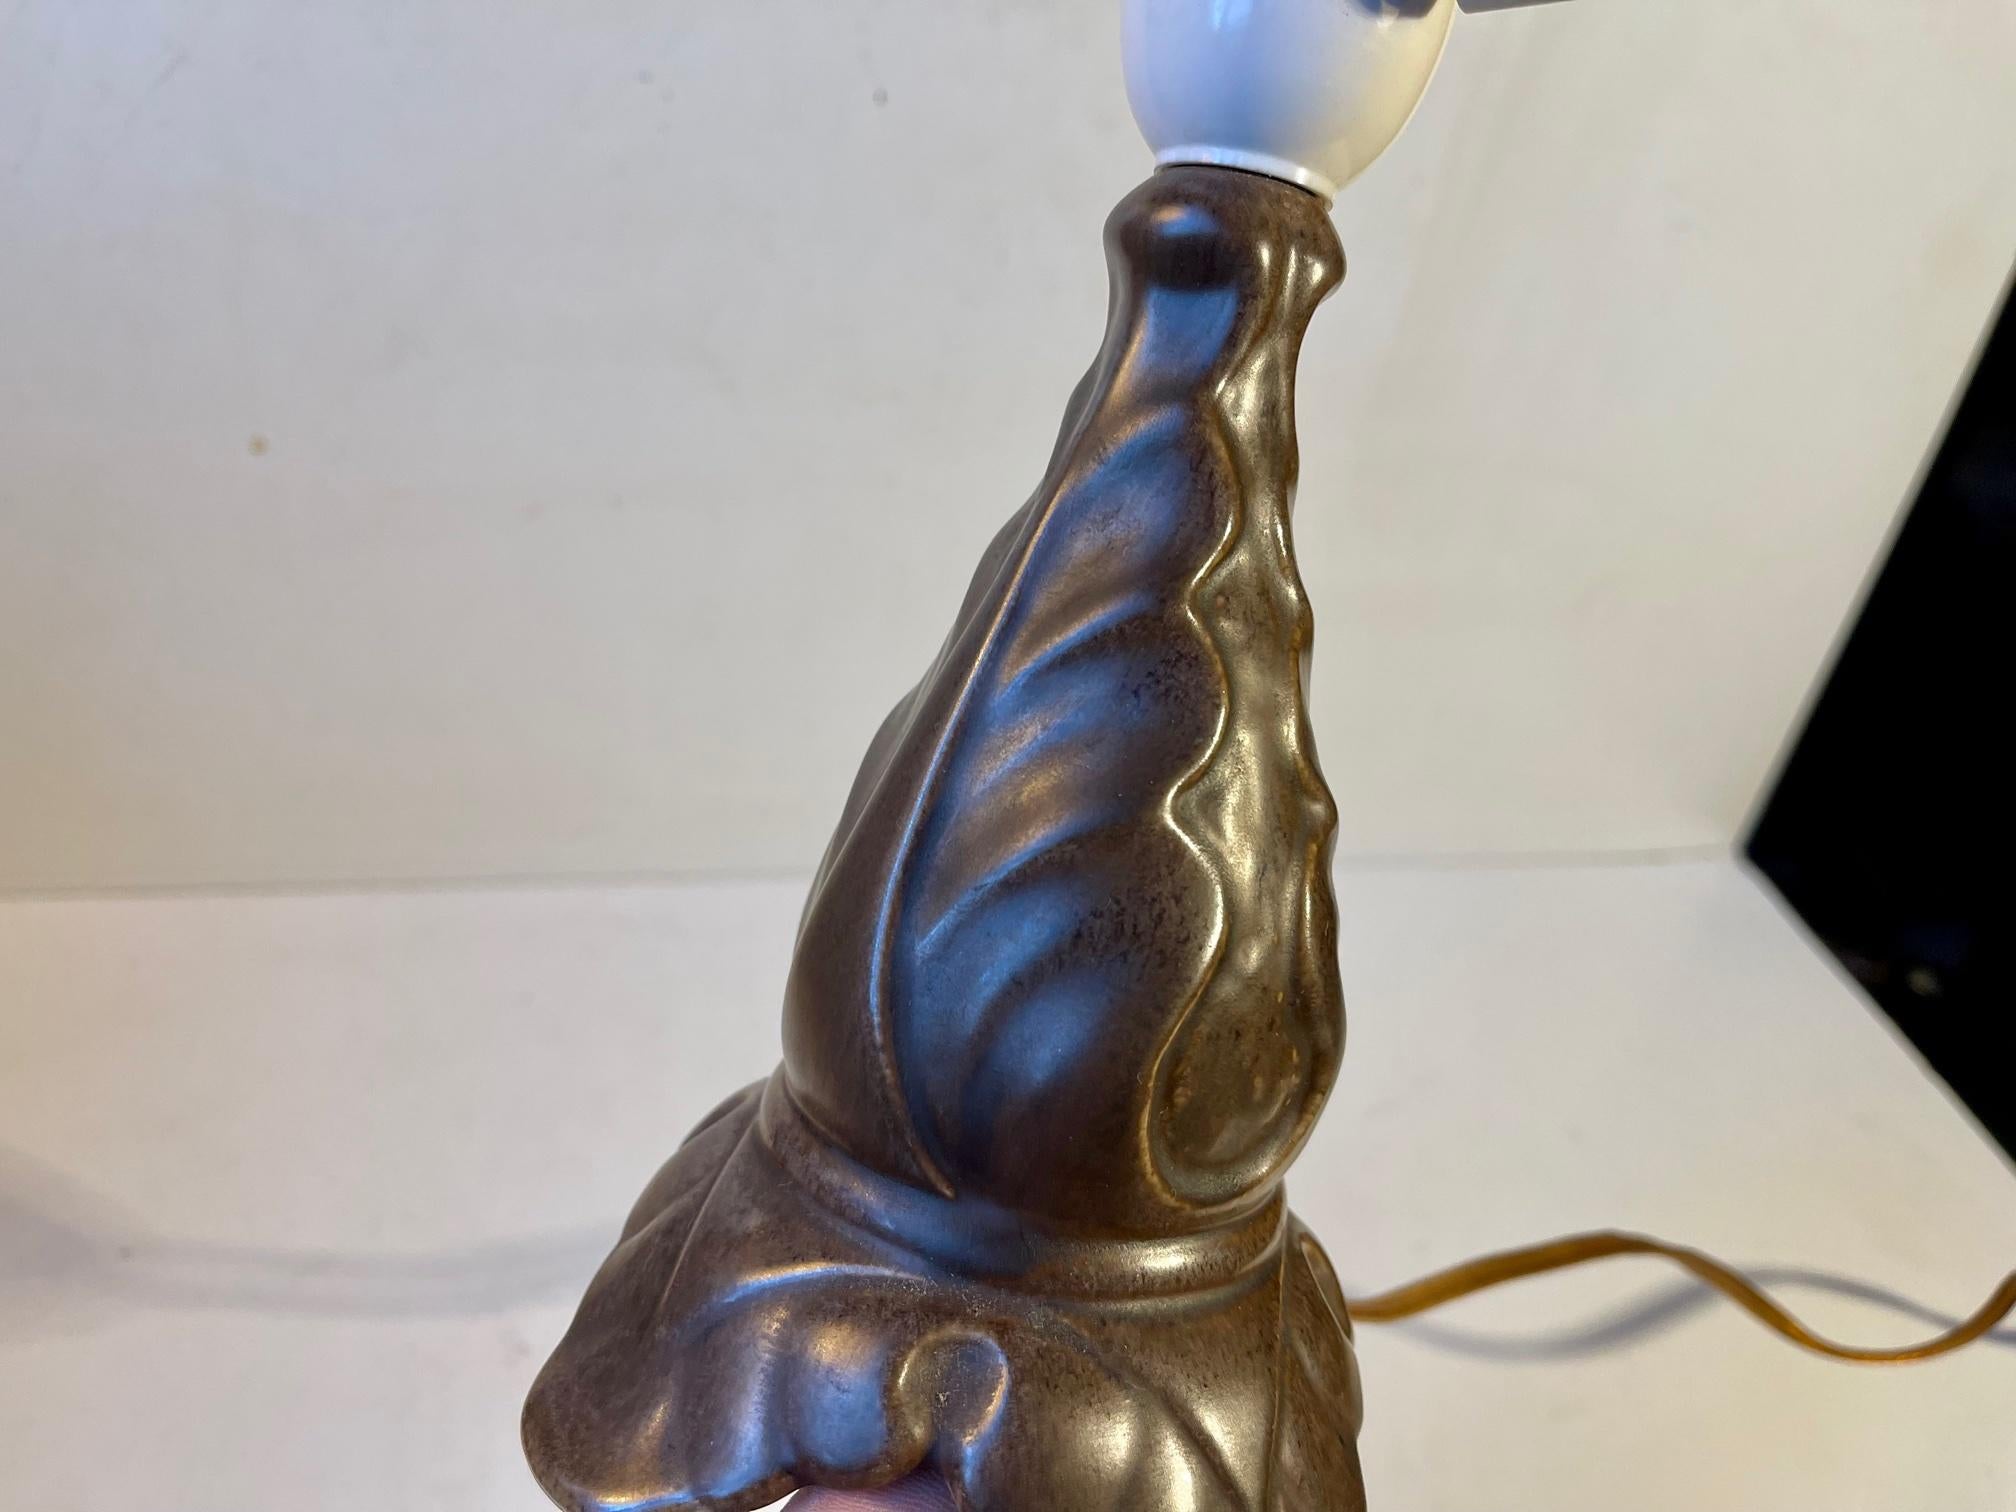 Danish Art Nouveau Revival Ceramic Table Lamp by Søholm, 1950s